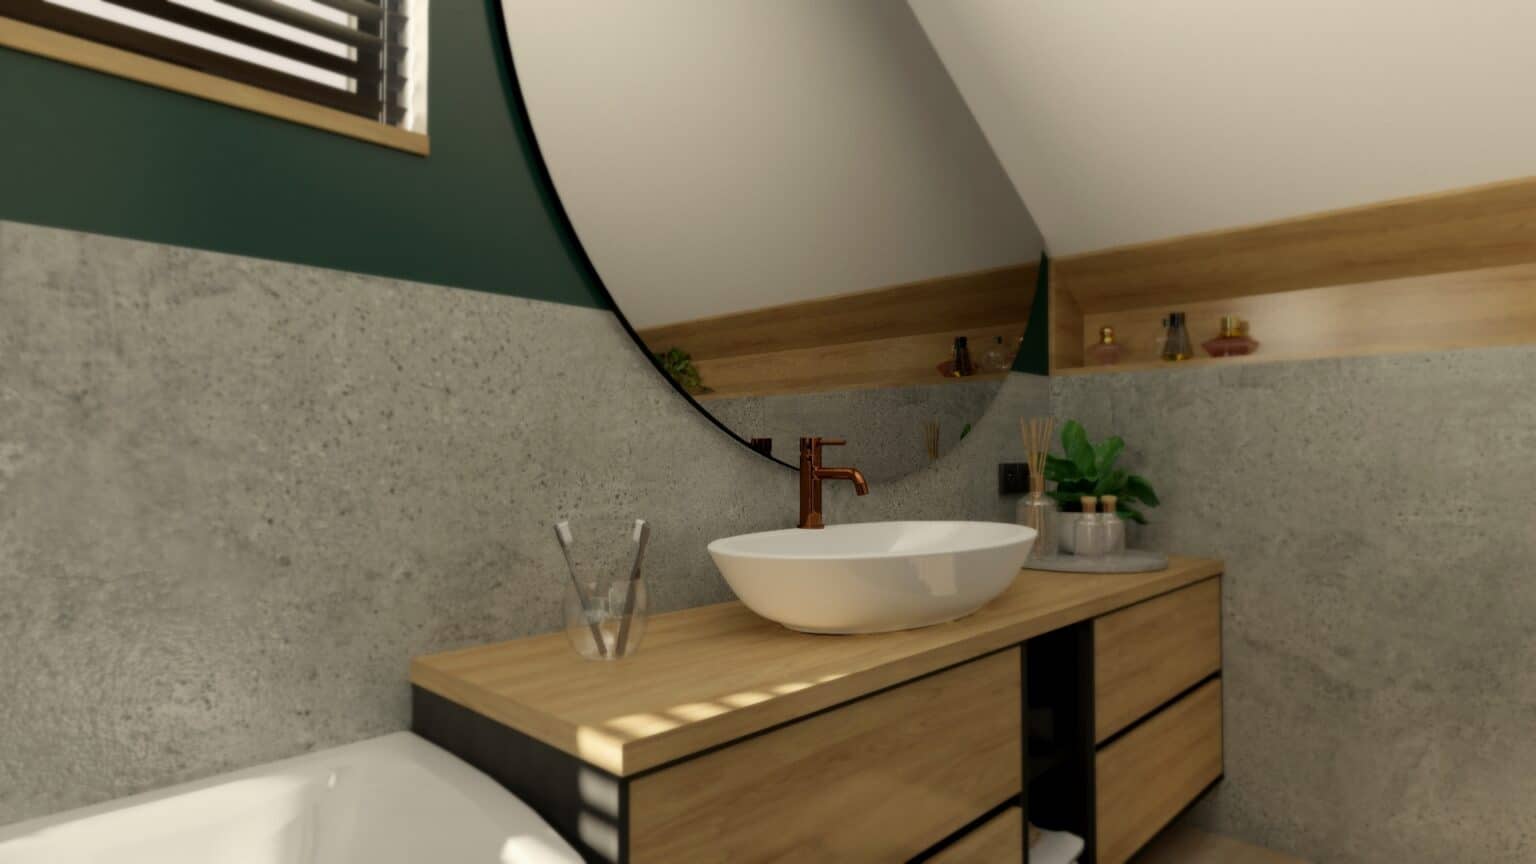 łazienka drewno i beton (11)